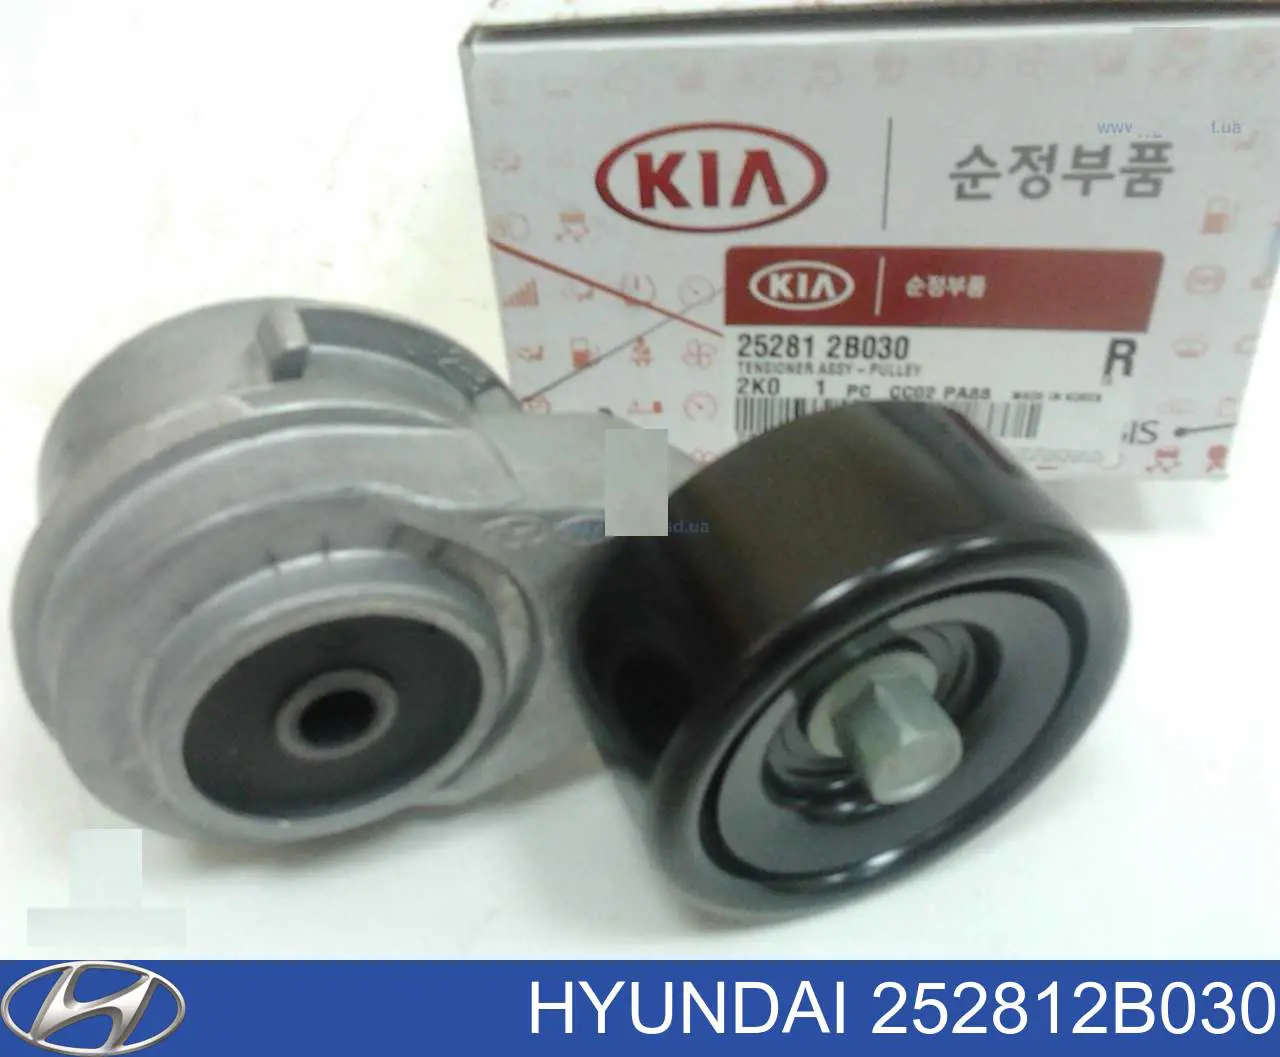 252812b030. Hyundai/Kia 25281-2b030. Натяжитель Hyundai 252812b030. 25281-2b030 натяжитель приводного. 252812b030 Hyundai-Kia шкив натяжителя ремня ГРМ.